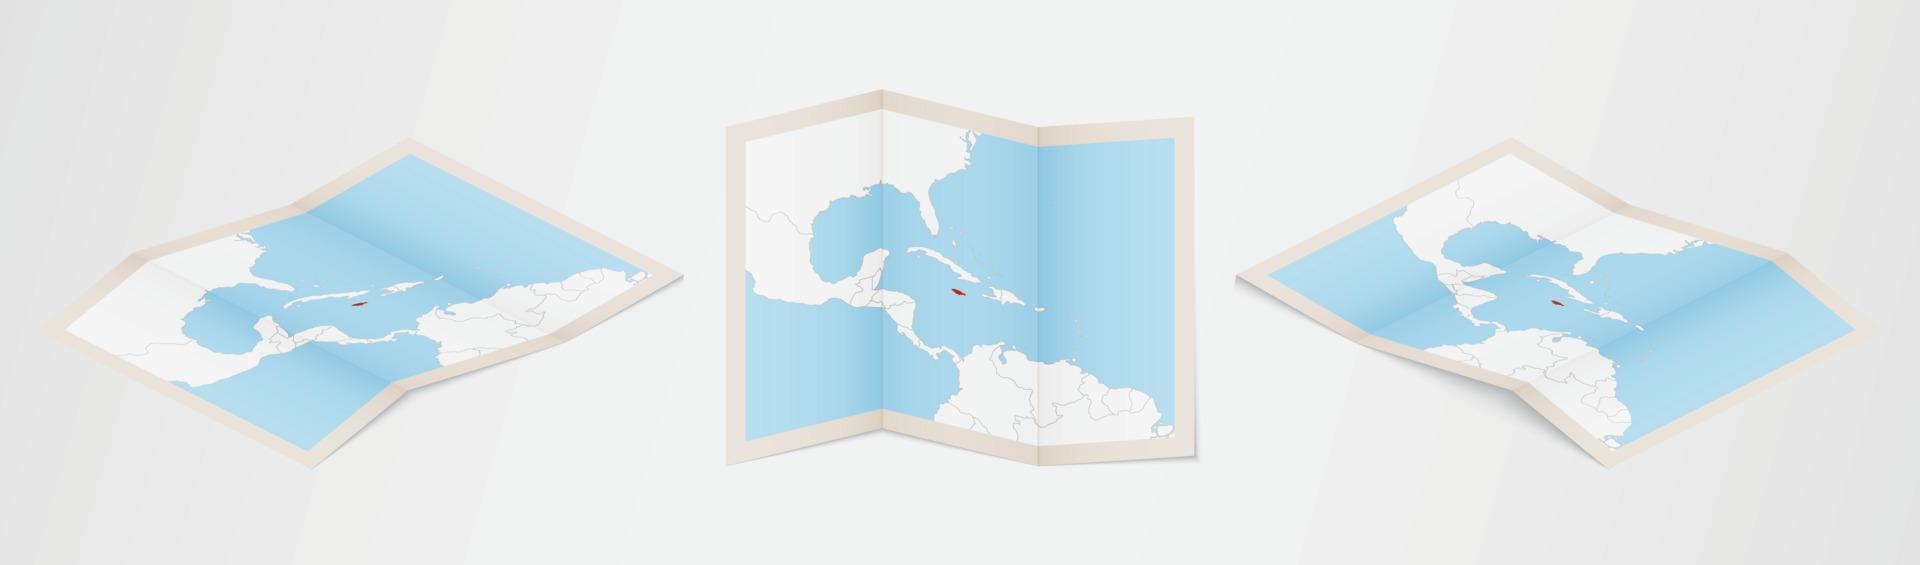 Faltkarte von Jamaika in drei verschiedenen Versionen. vektor